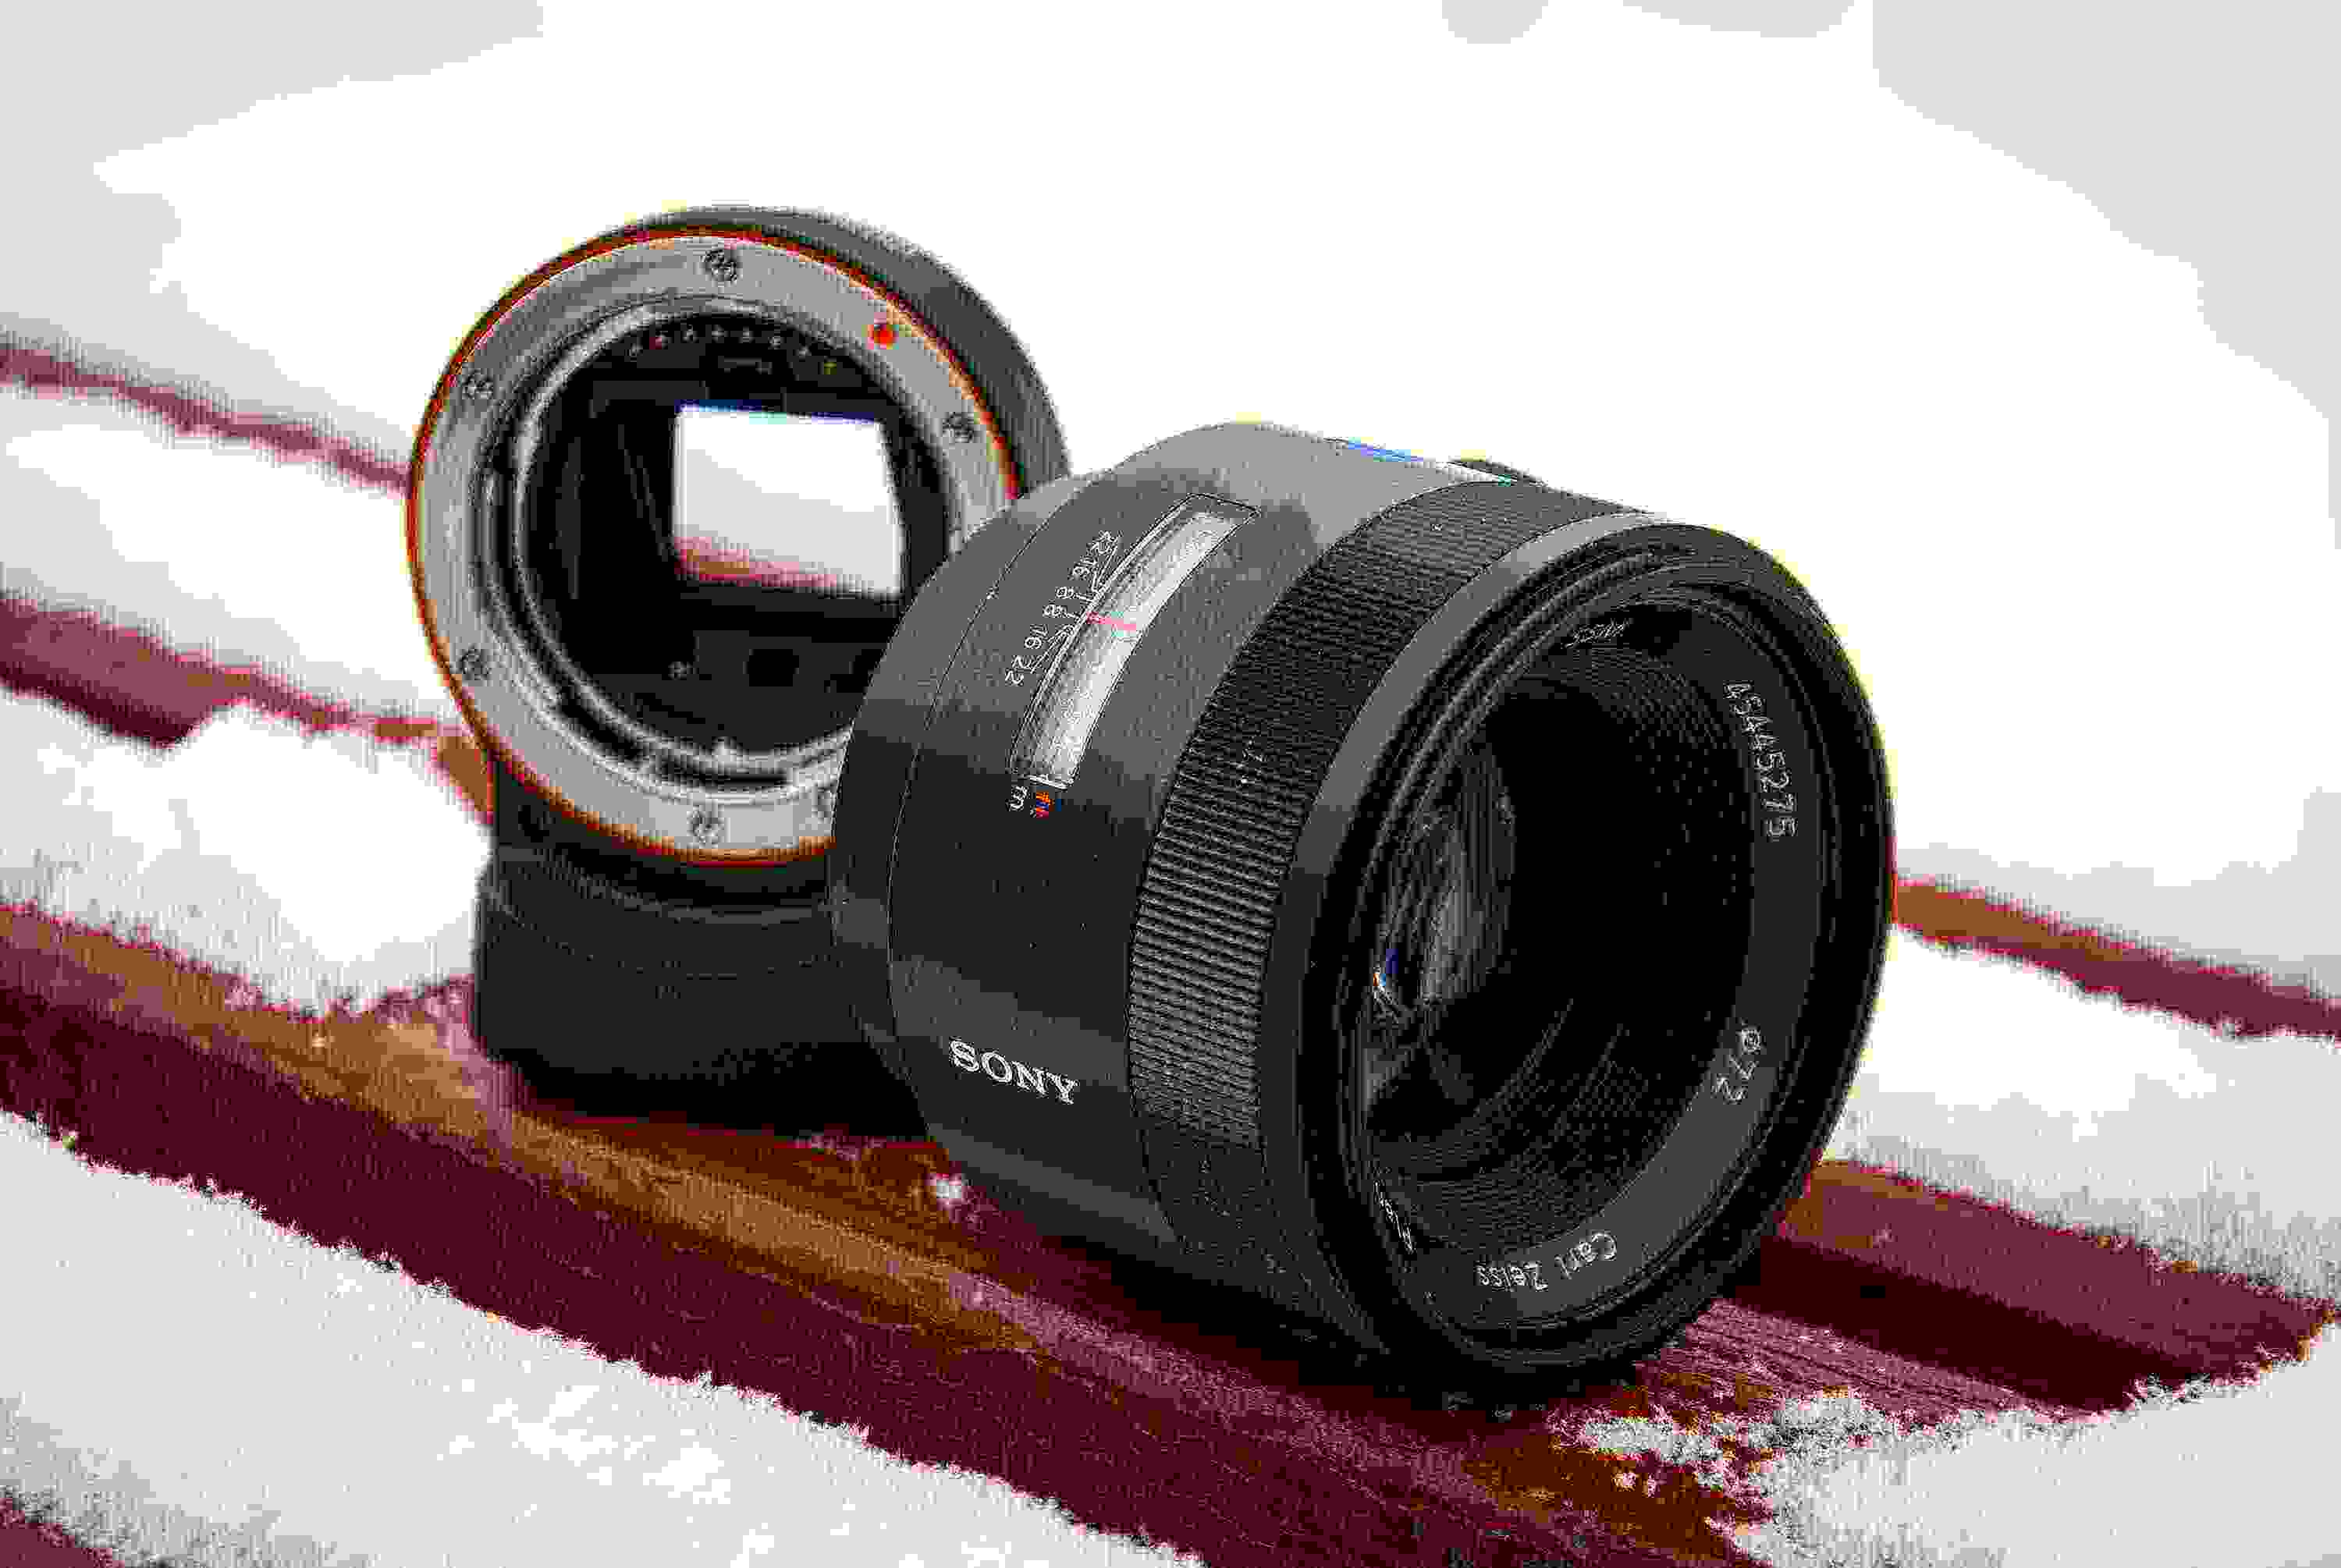 Обзор Sony Carl Zeiss Planar T* 50mm f1.4 ZA SSM. Светосильный полнокадровый «полтинник» премиум-класса, установленный через переходник на беззеркалку